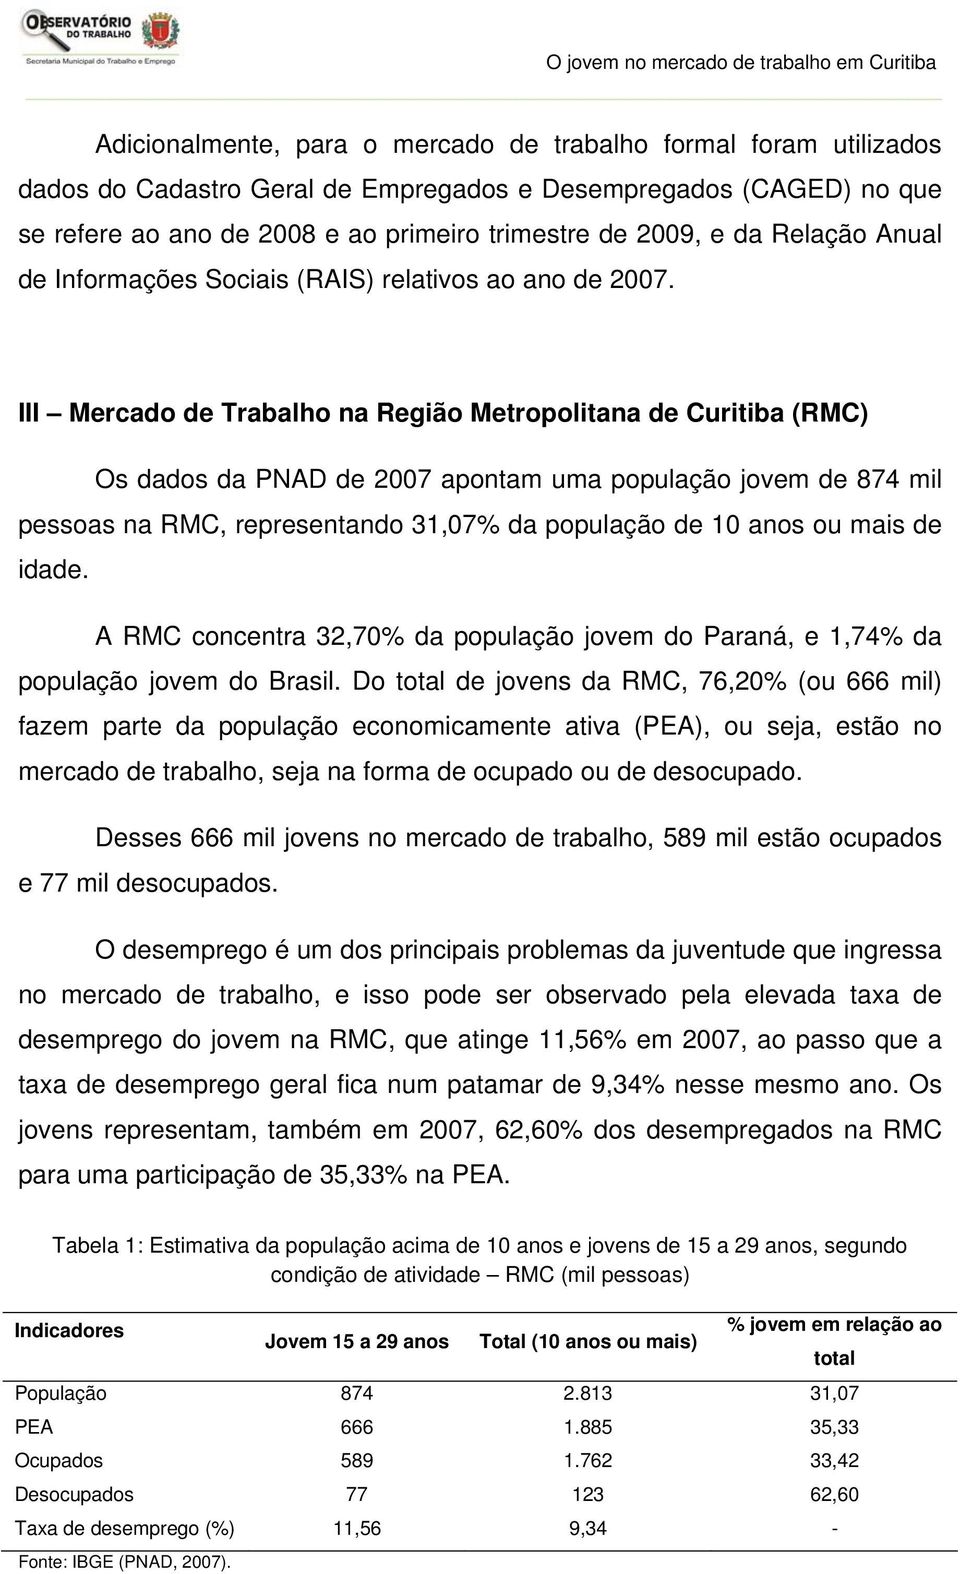 III Mercado de Trabalho na Região Metropolitana de Curitiba (RMC) Os dados da PNAD de 2007 apontam uma população jovem de 874 mil pessoas na RMC, representando 31,07% da população de 10 anos ou mais